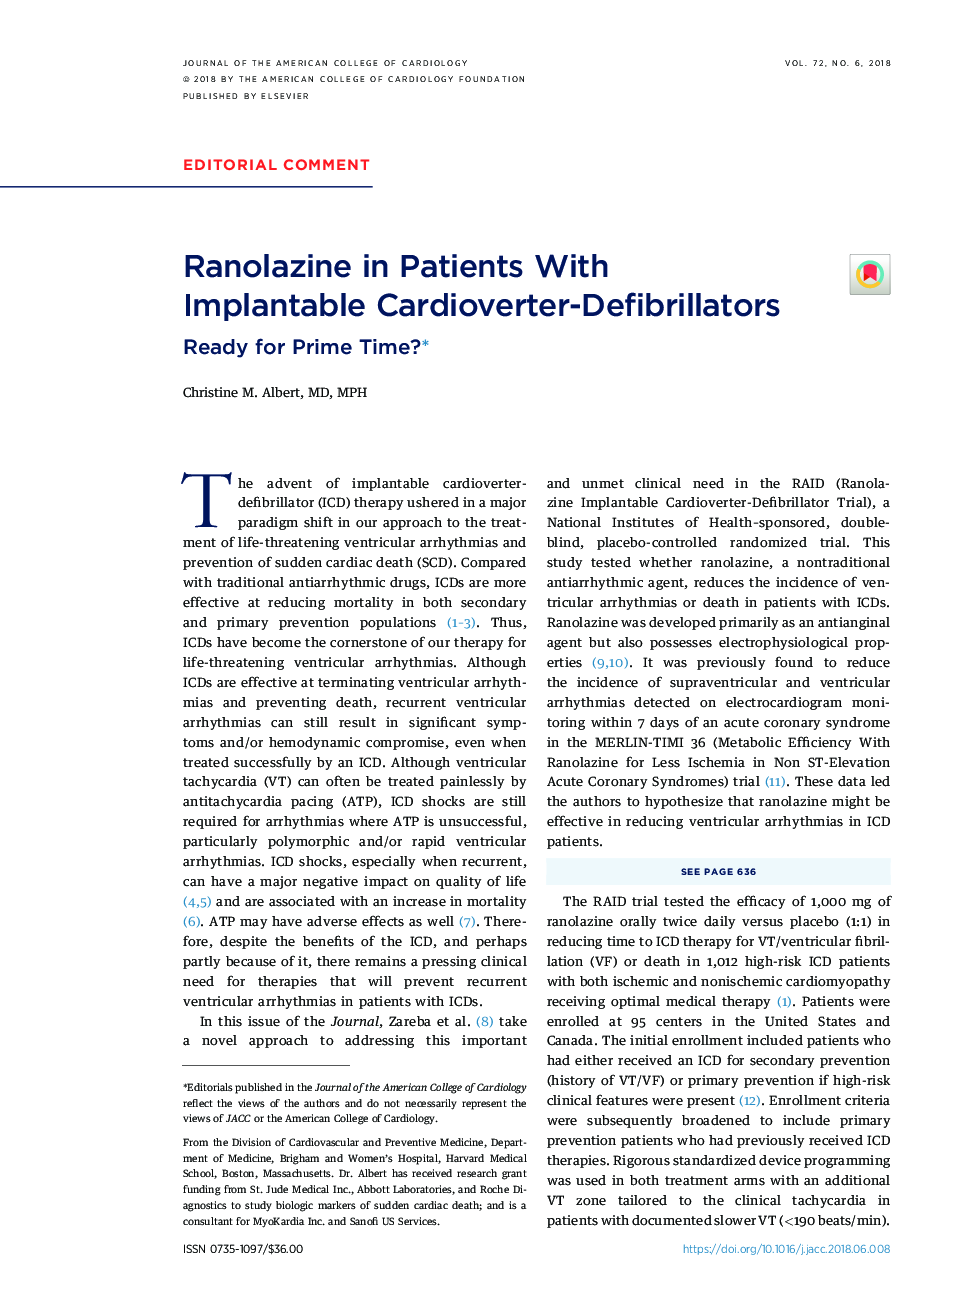 Ranolazine in Patients With ImplantableÂ Cardioverter-Defibrillators